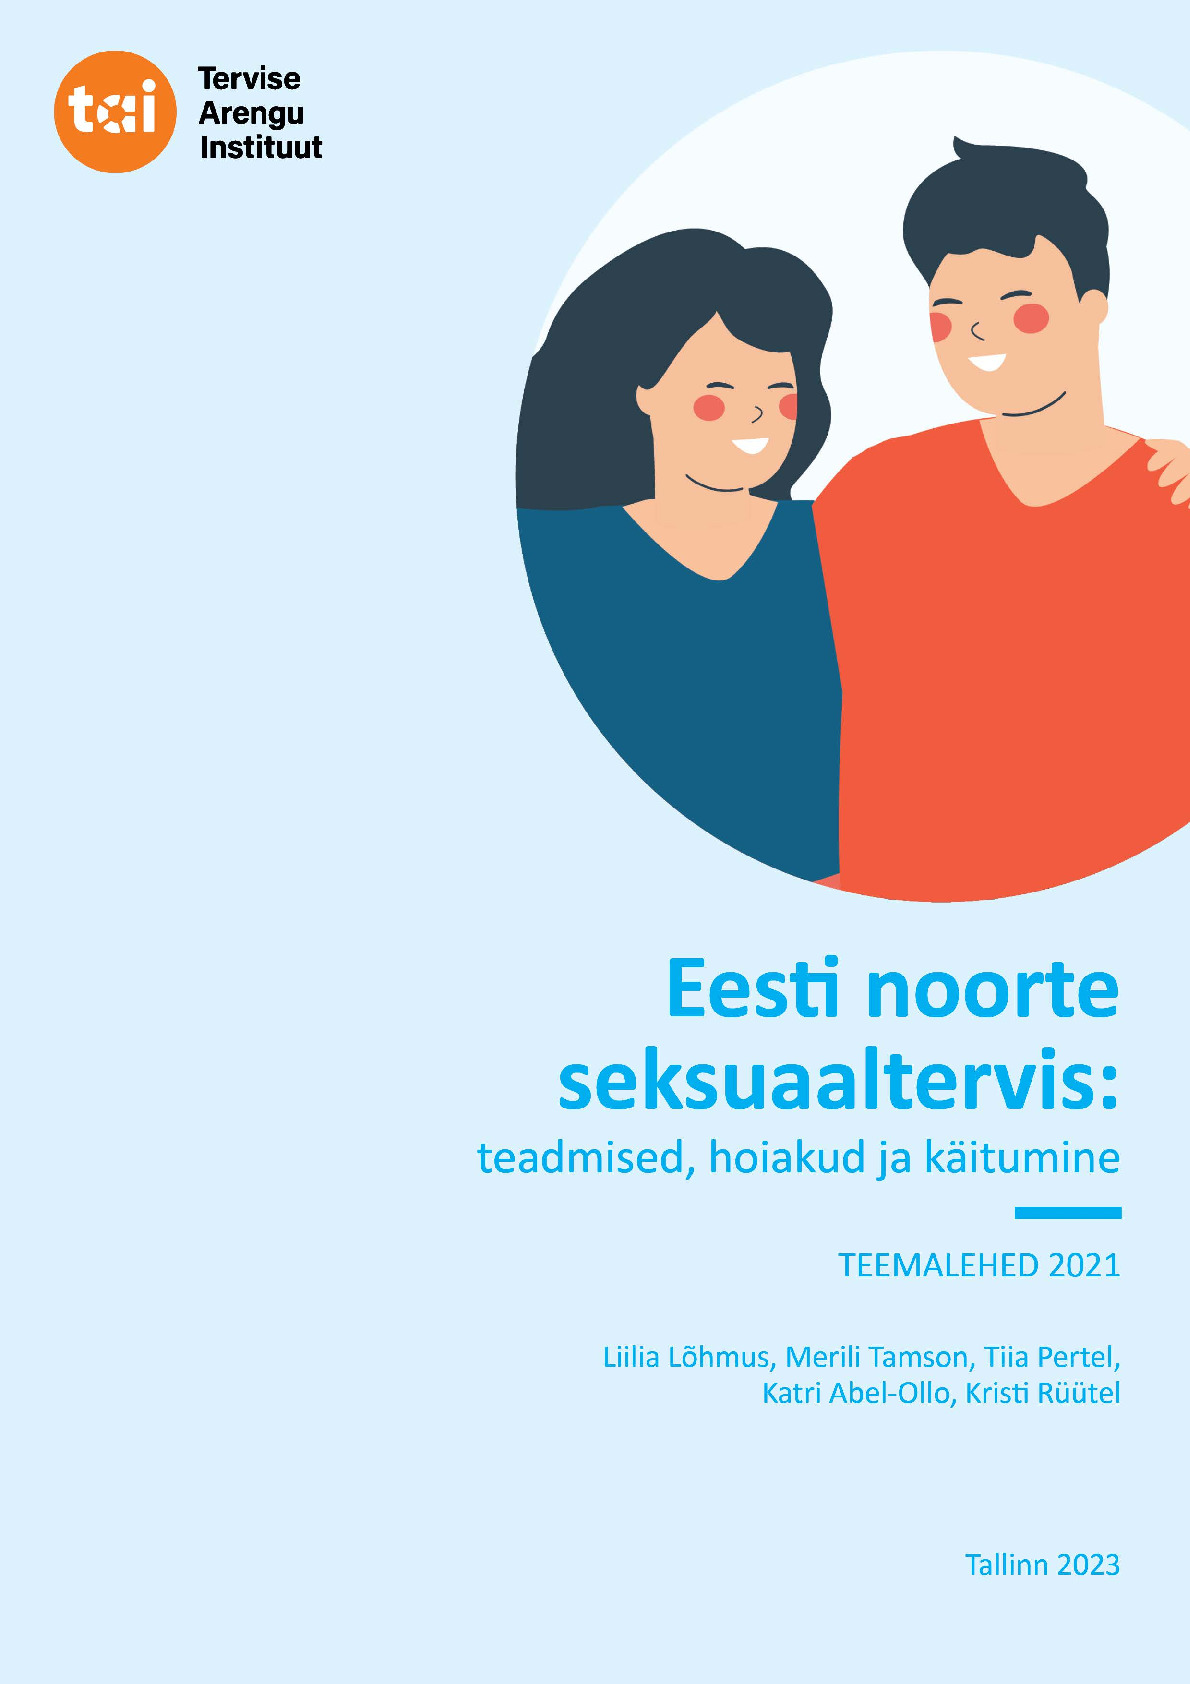 Eesti noorte seksuaaltervis: teadmised, hoiakud ja käitumine. Teemalehed 2021